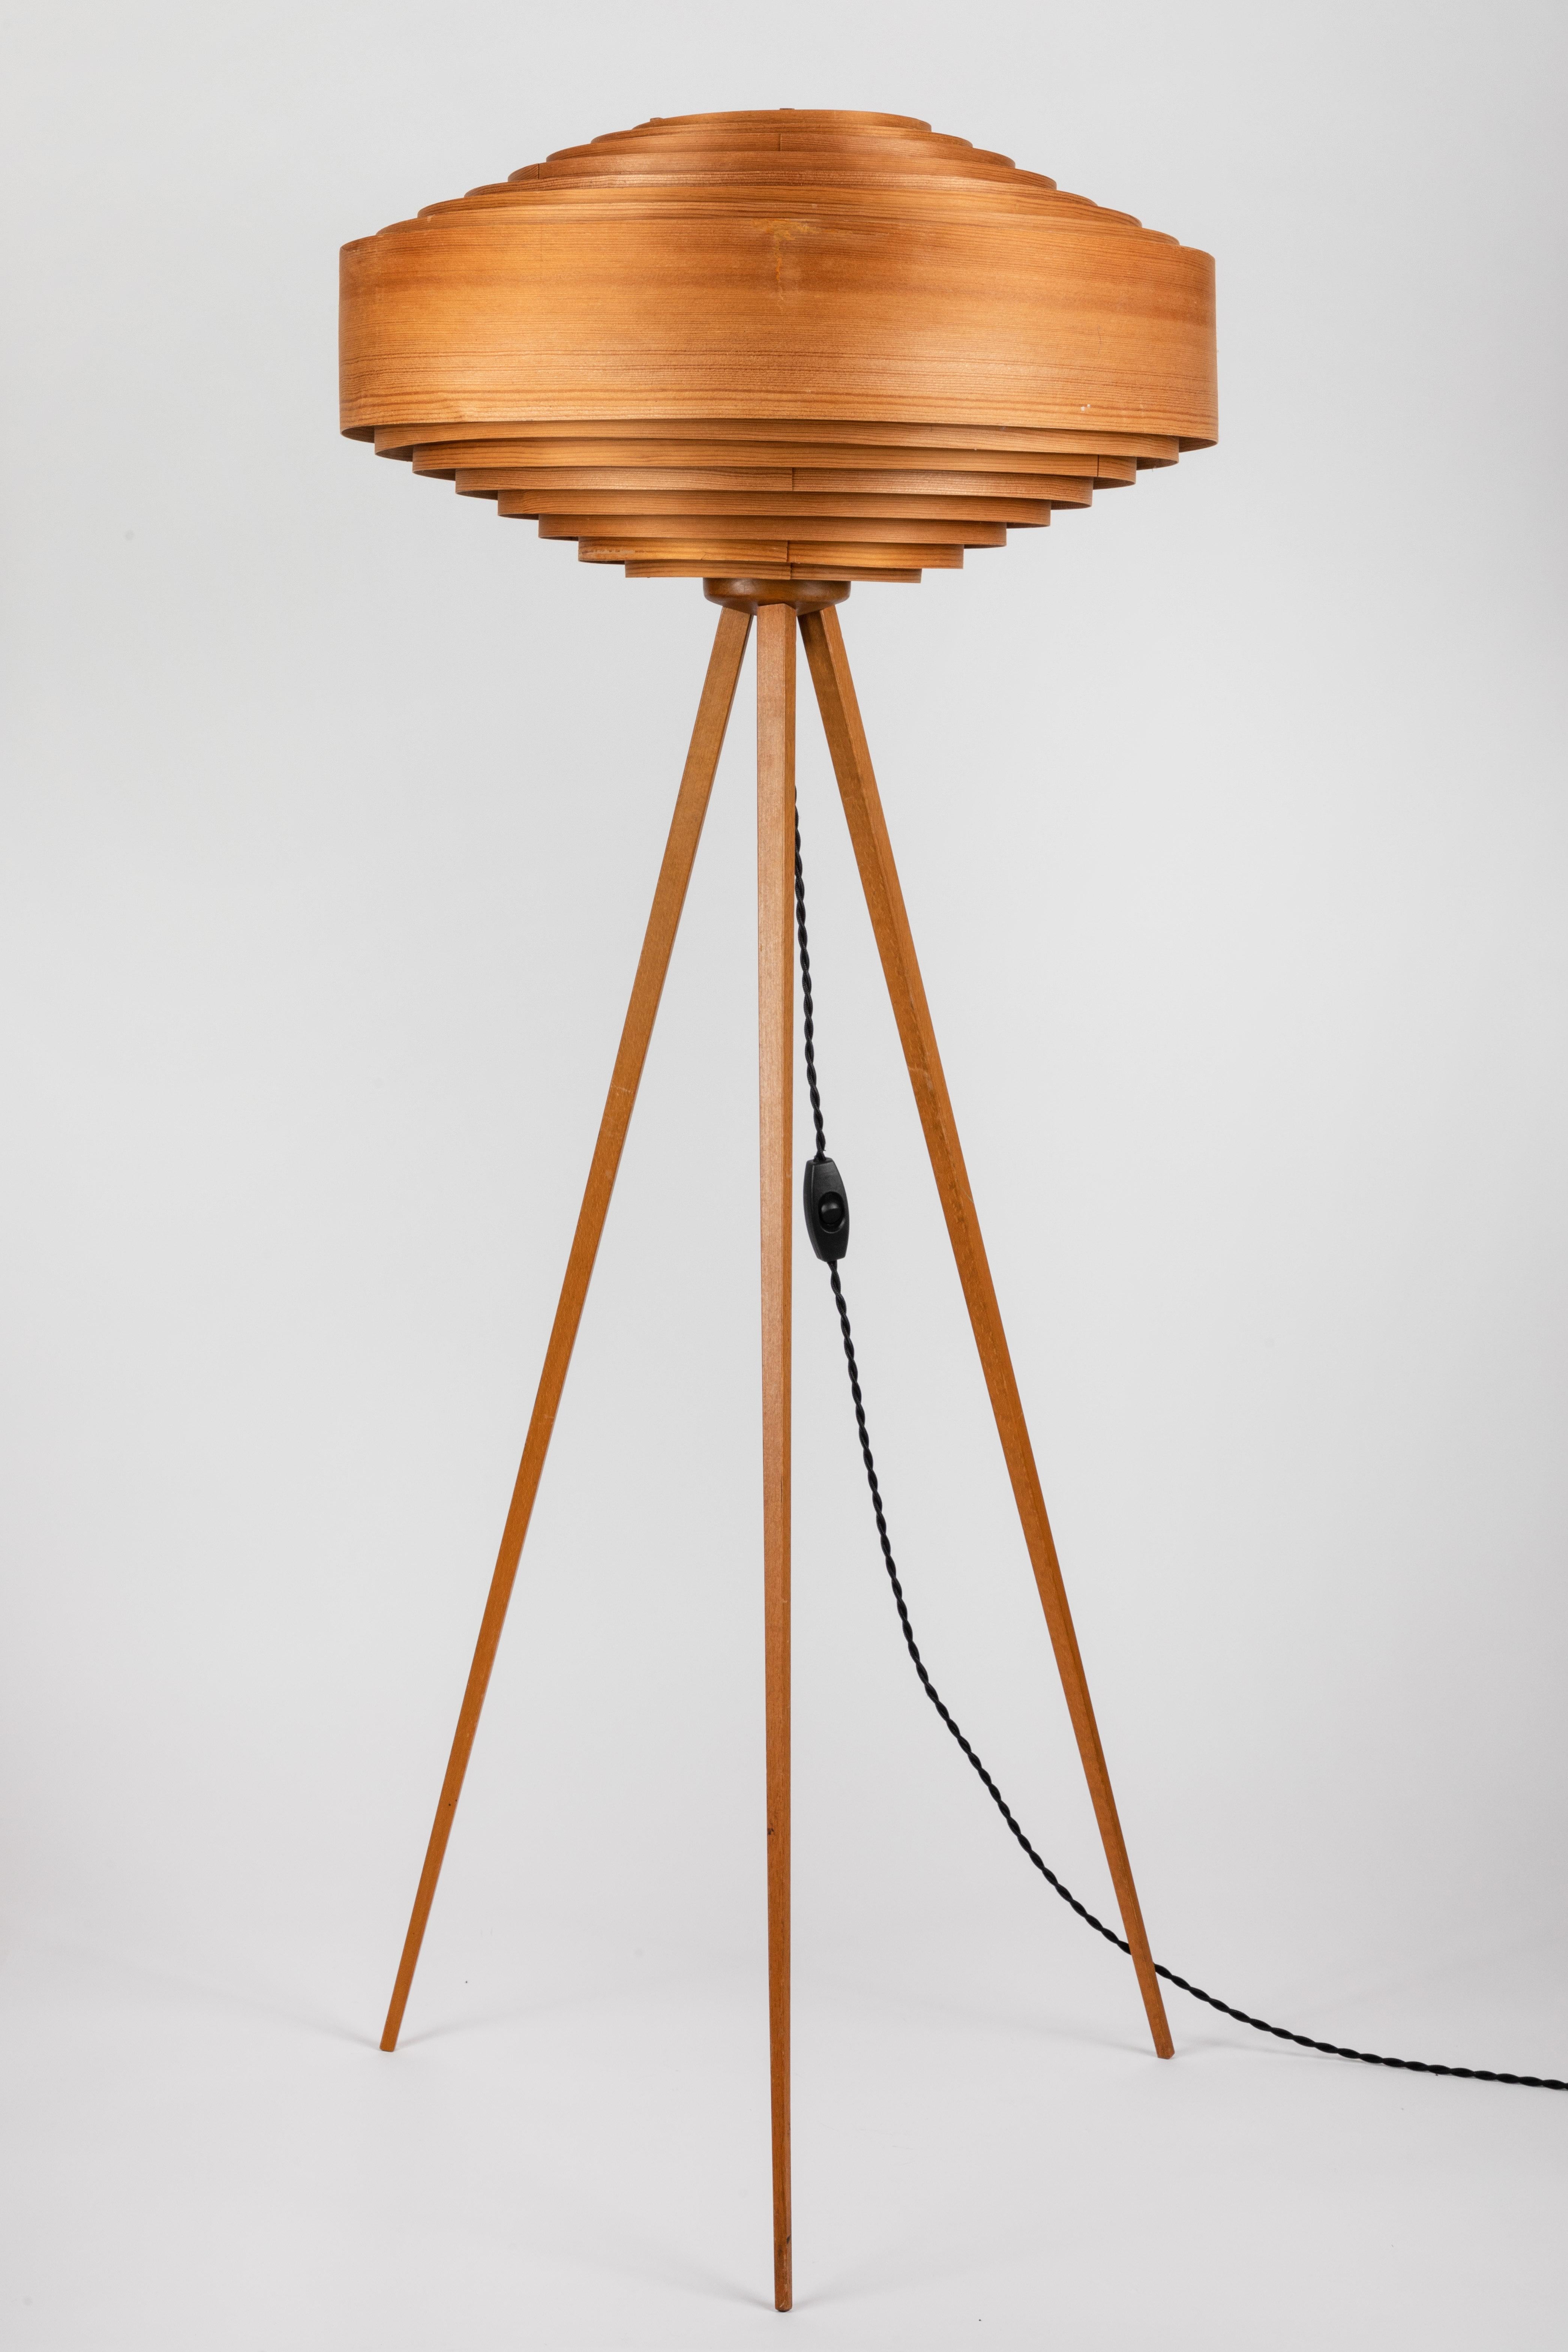 1960s Hans-Agne Jakobsson Wood Tripod Floor Lamp for AB Ellysett 9